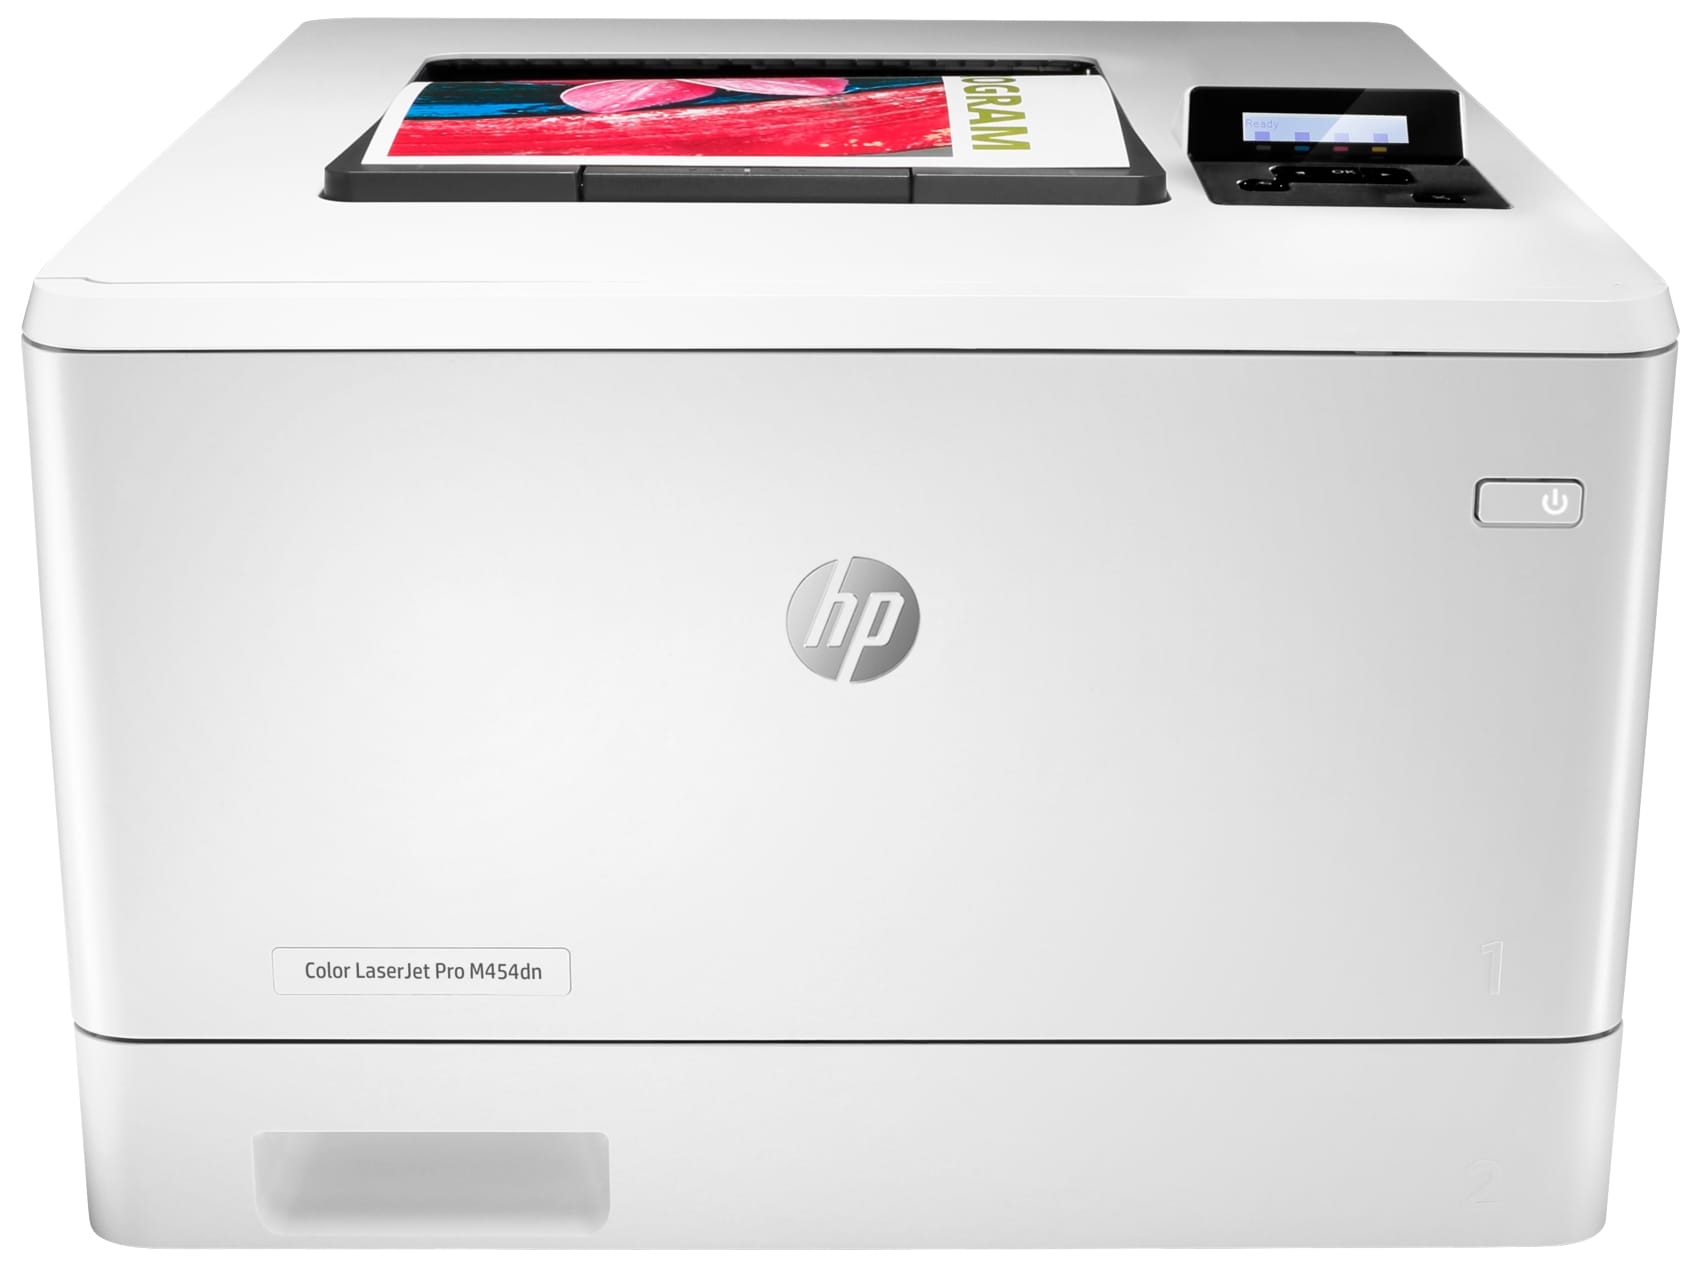 HP LaserJet Pro M454dn Desktop Laser Printer - Color